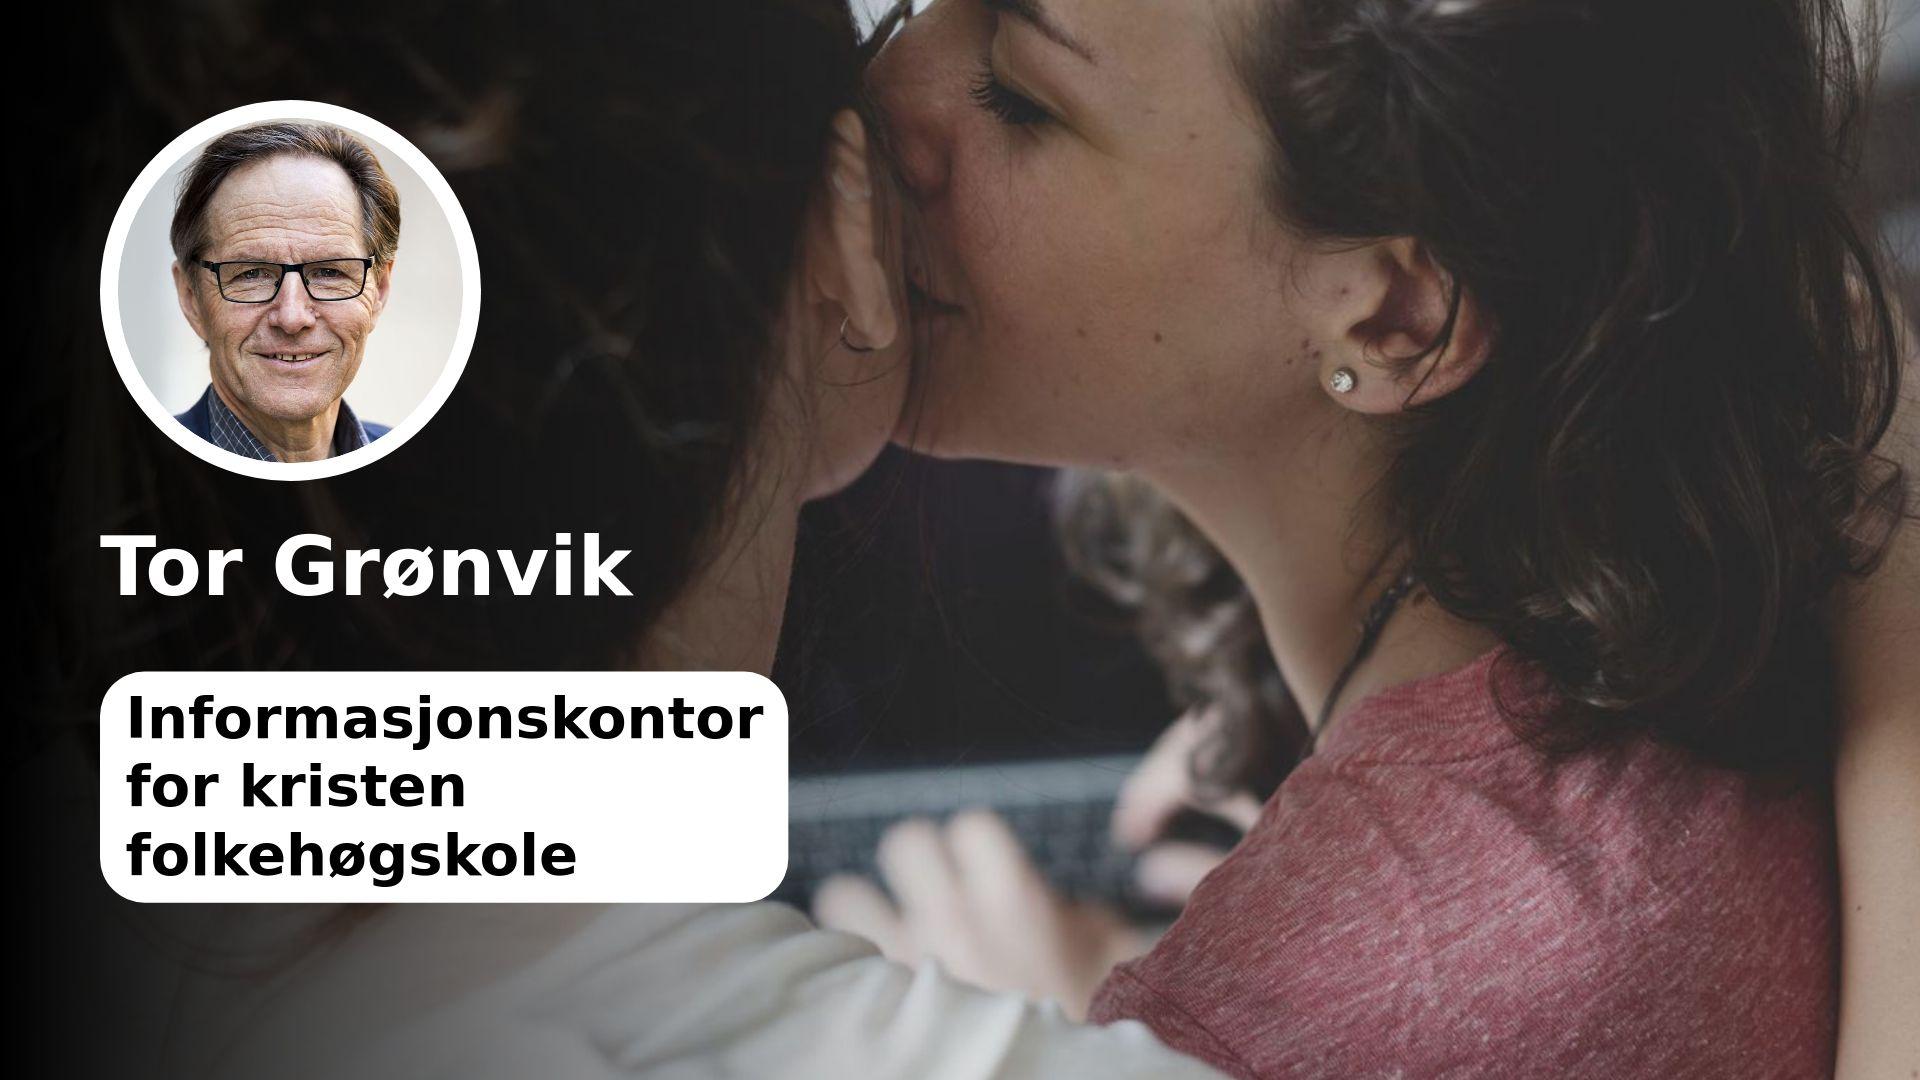  Vi har lest innlegget ditt og synes det er leit at du som lesbisk føler deg mindre verdt, skriver Tor Grønvik til fremtidig folkehøgskoleelev (18).